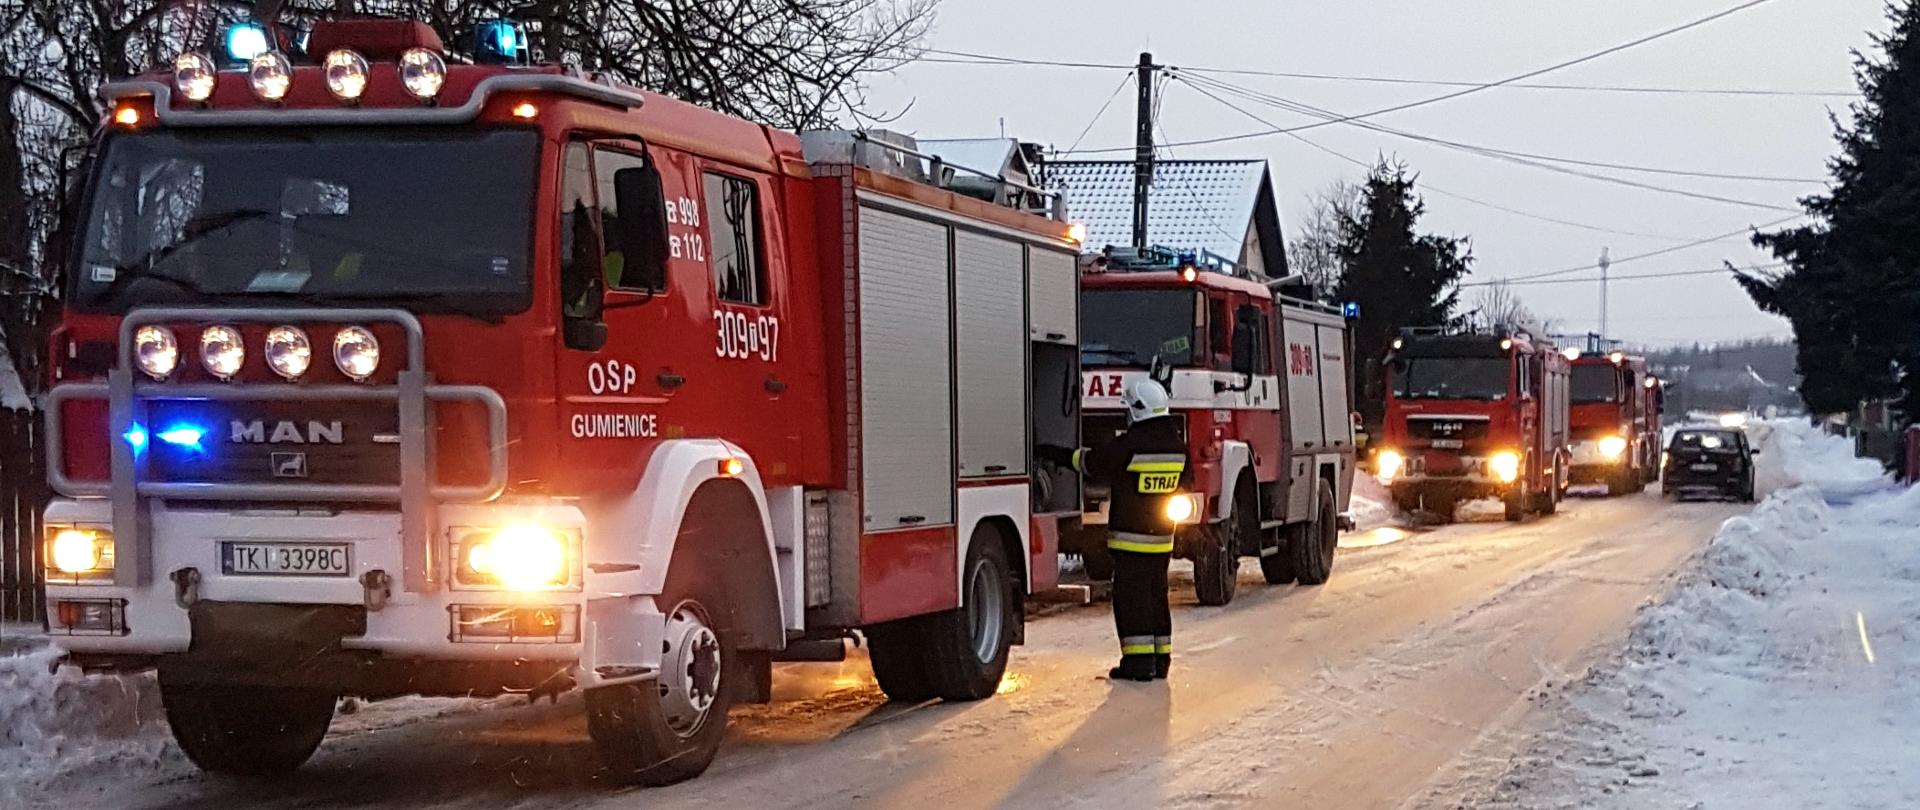 Zdjęcie przedstawia trzy samochody pożarnicze ustawione jeden za drugim na zaśnieżonej drodze.